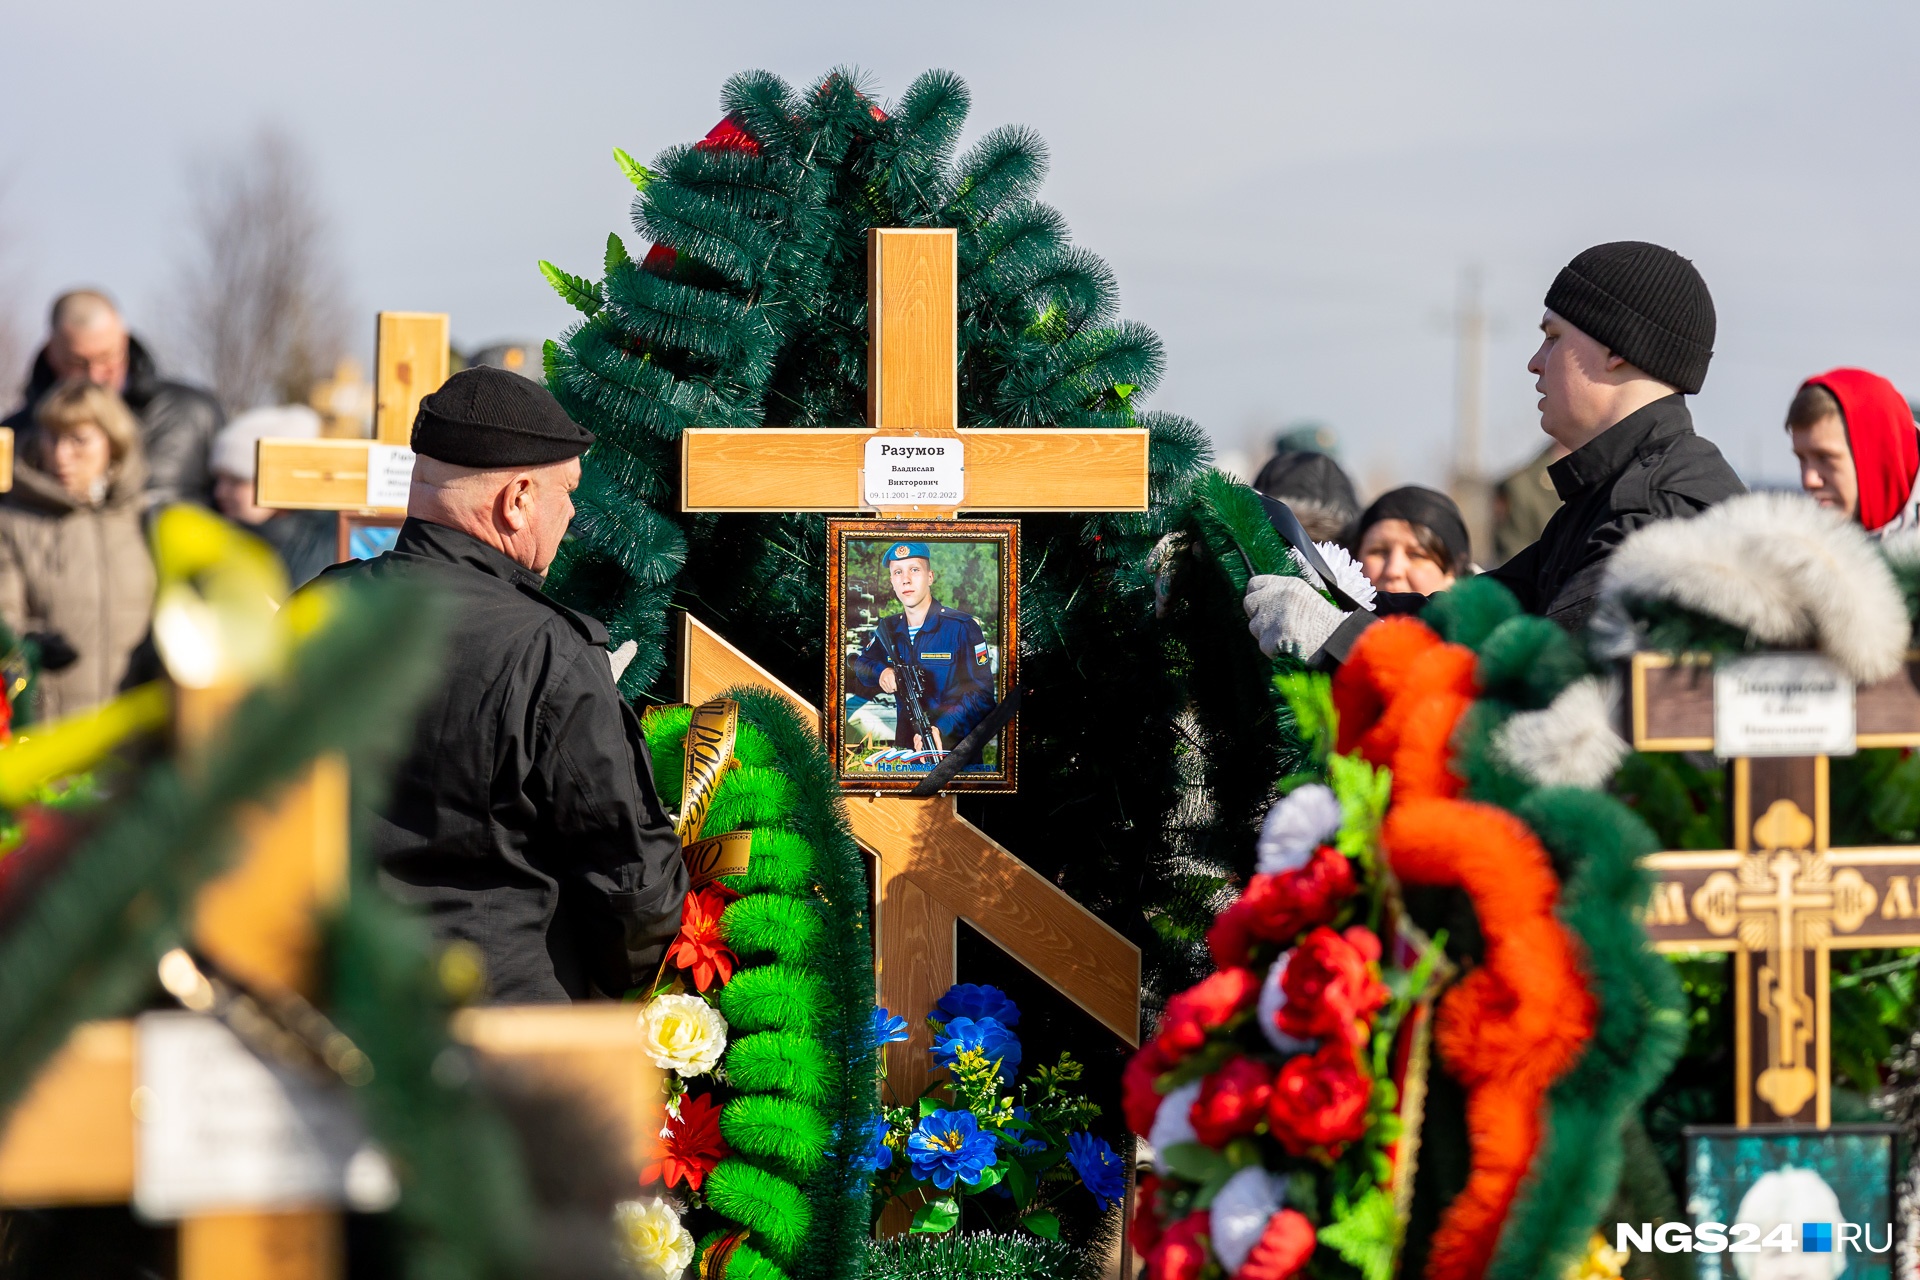 Похорони ф. Прощание с погибшими на Украине. Похороны военнослужащего. Похороны солдат погибших в Украине 2022.